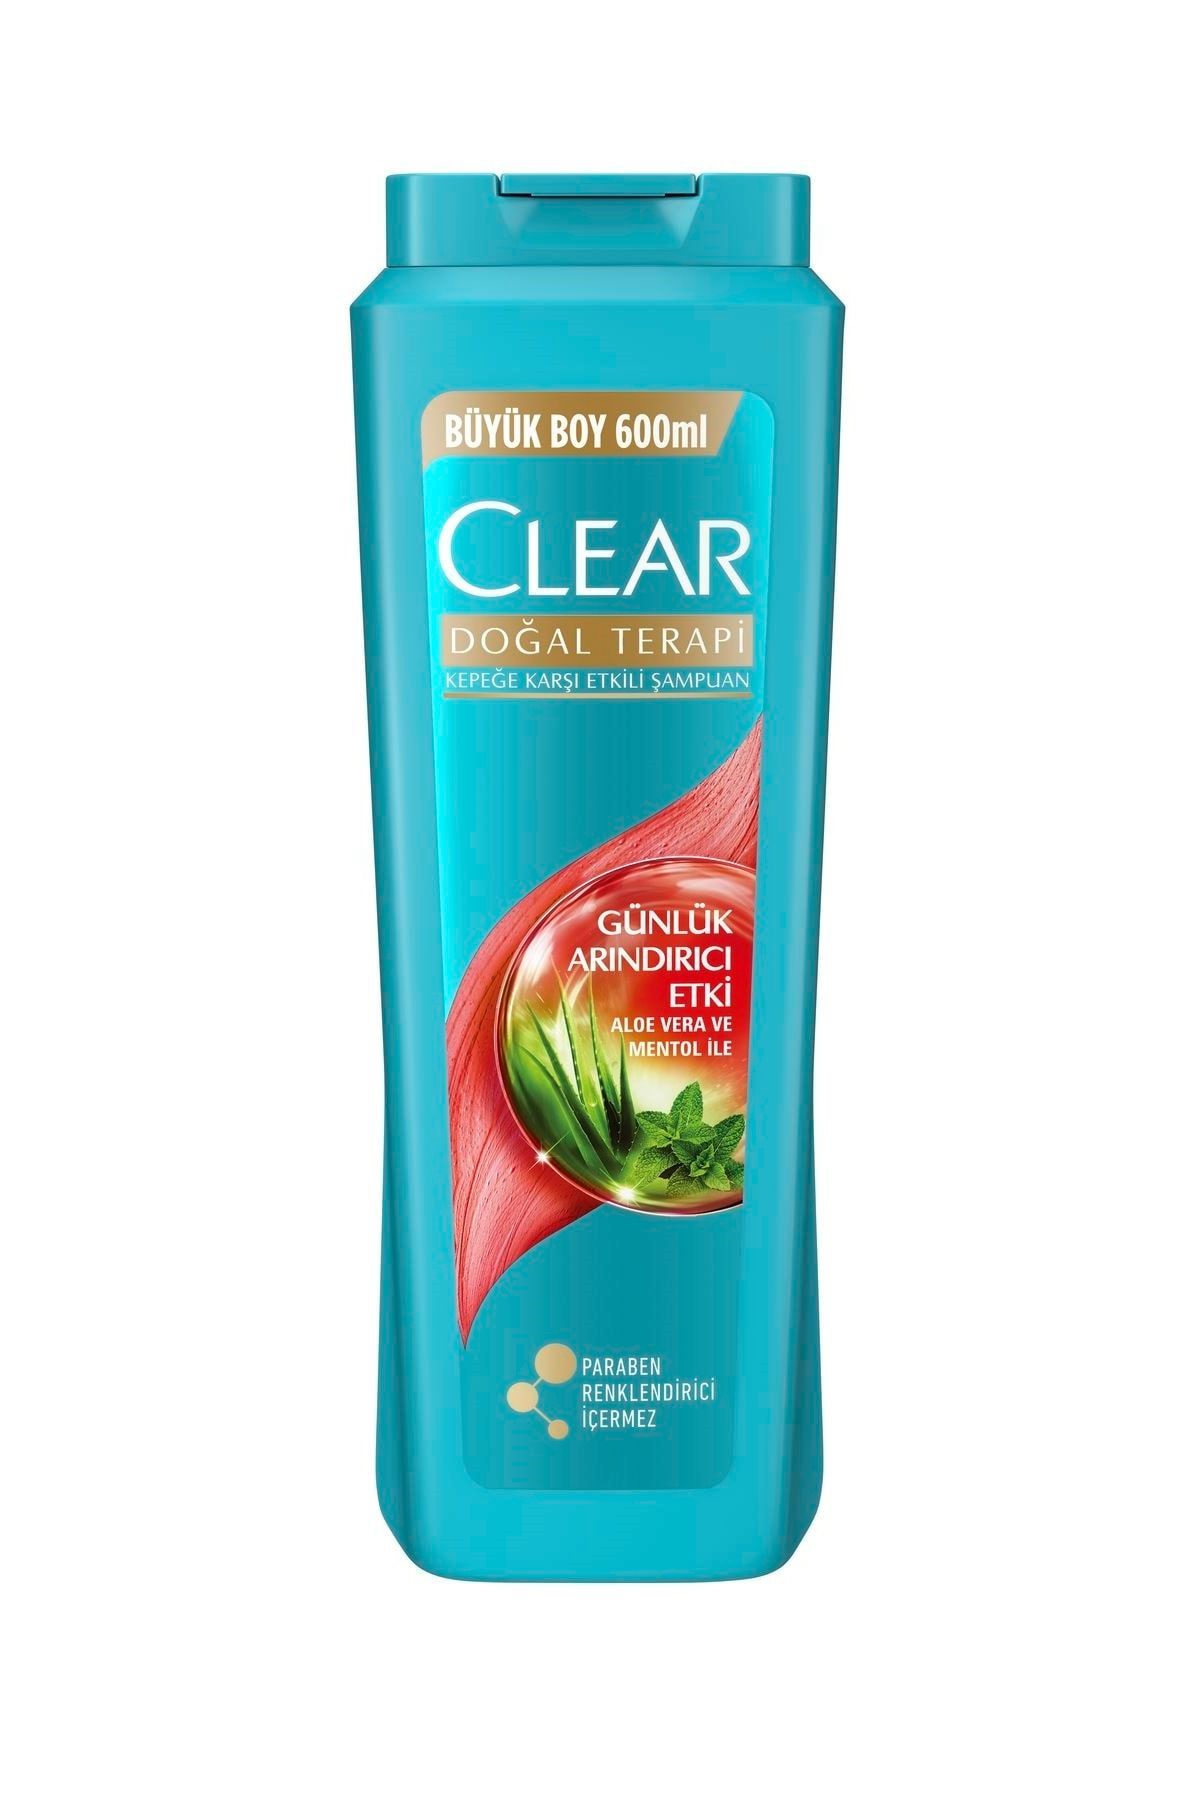 Clear Günlük Arındırıcı Etkili Doğal Terapi Şampuan 600 ml